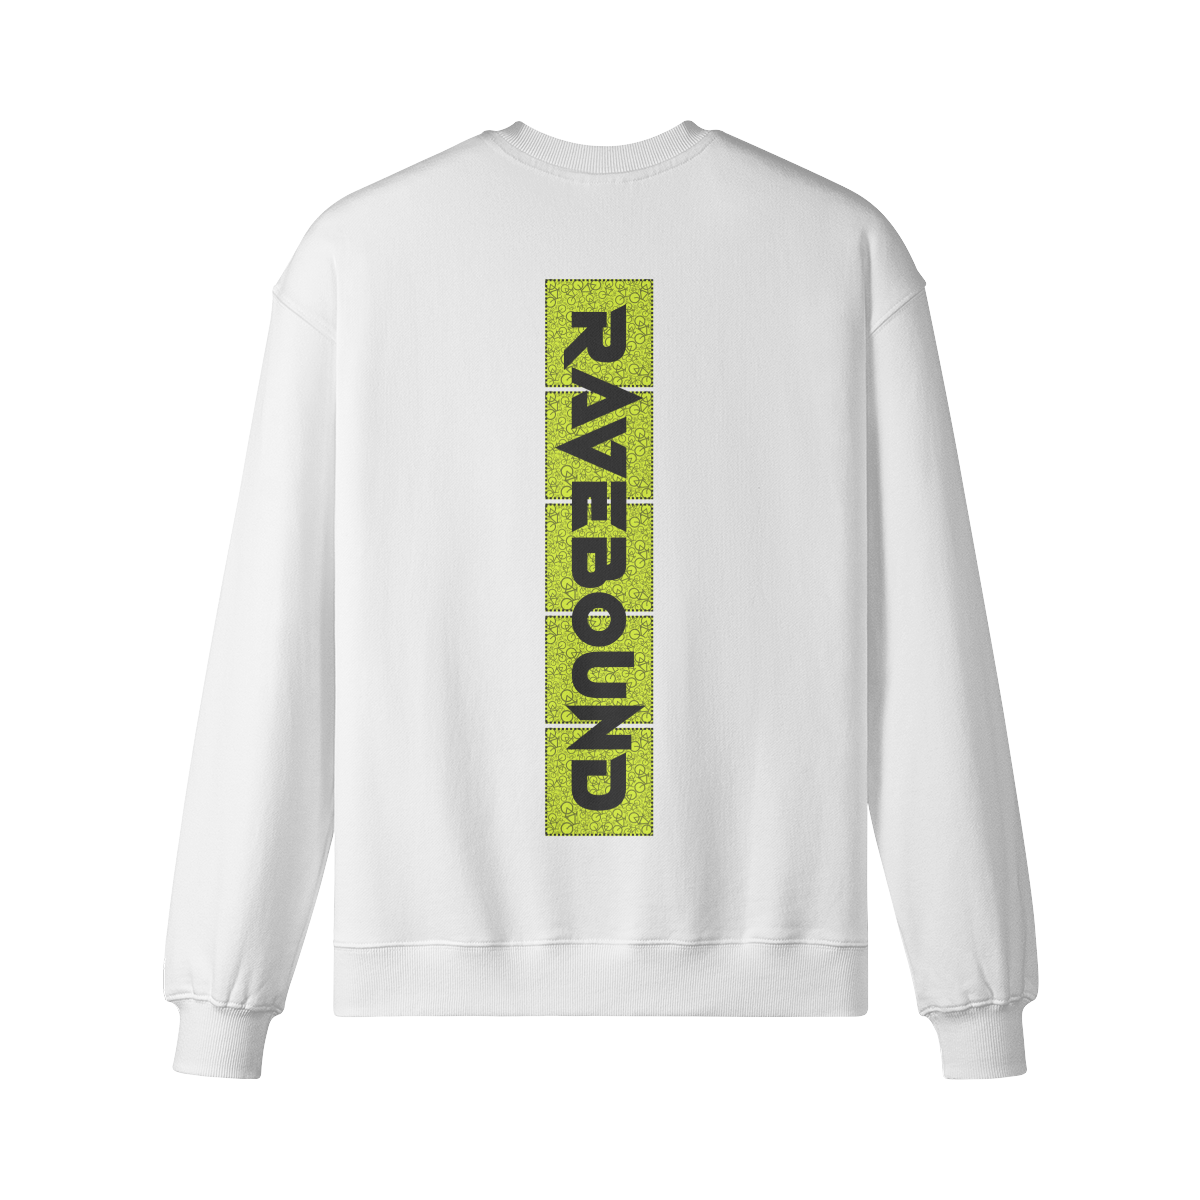 RAVEBOUND (BACK PRINT) - Unisex Oversized Sweatshirt